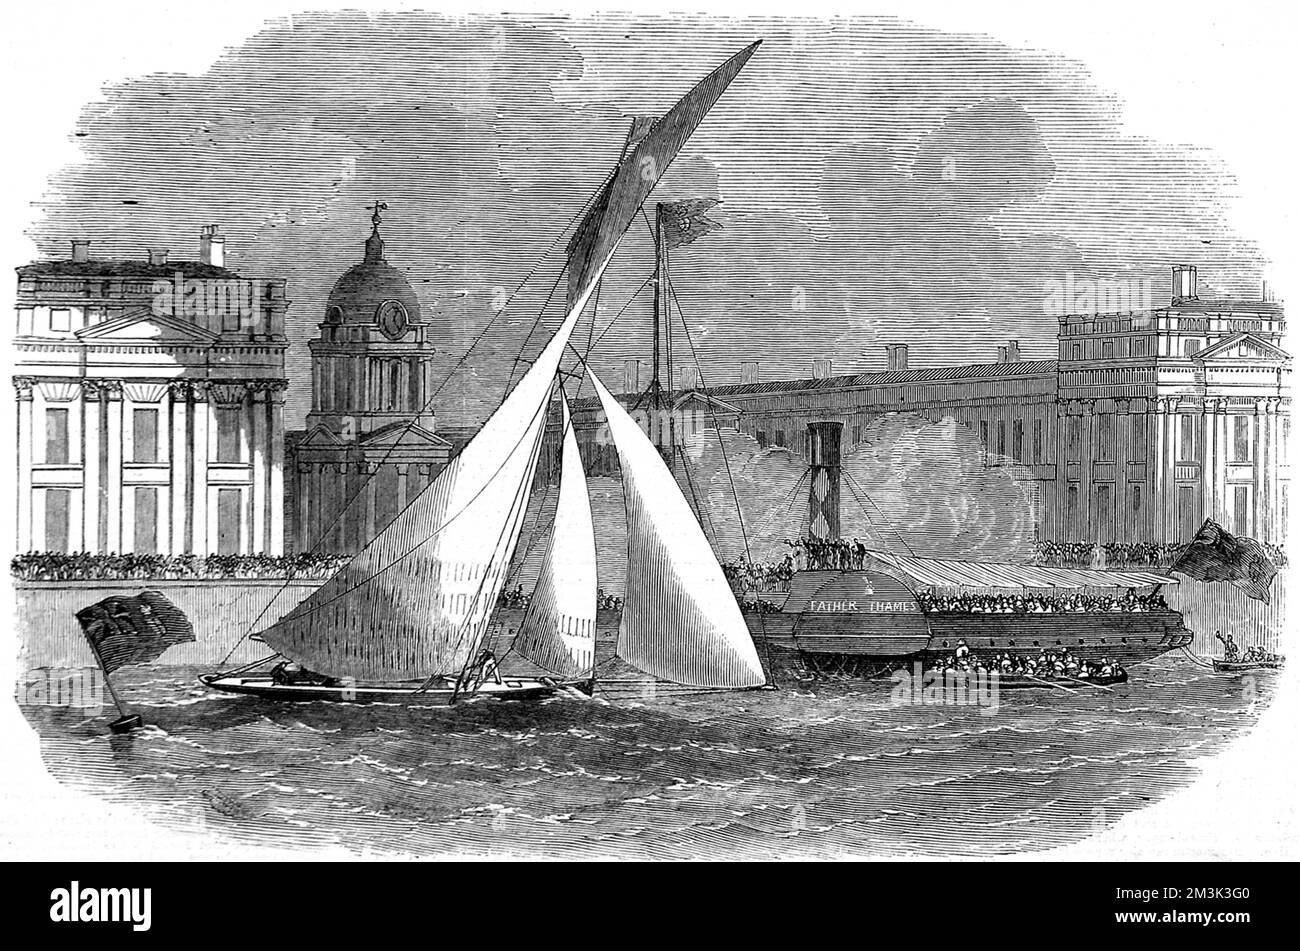 Le yacht 'Julia' a remporté le match du Royal London Yacht Club en étant le premier après la marque, River Thames au large de Greenwich, Londres. En arrière-plan, on peut voir le bateau à aubes, le « Père Thames », rempli de spectateurs et les bâtiments de l'hôpital Royal Naval au-delà. 1858 Banque D'Images